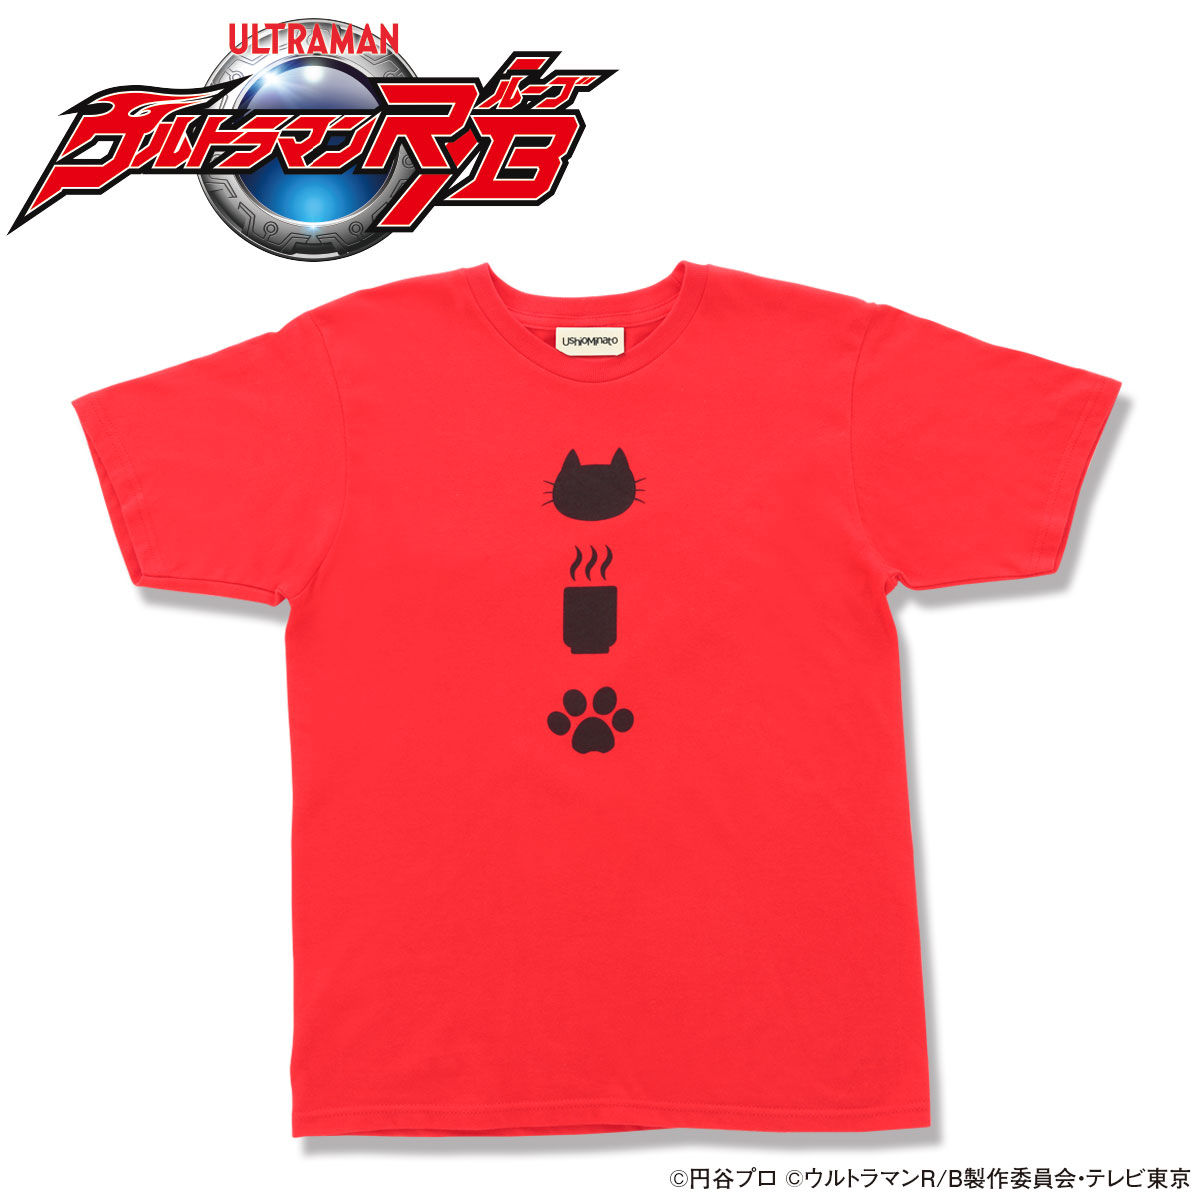 Ultraman R/B UshioMinato selected T-shirts Nancyatte(Just Joking)